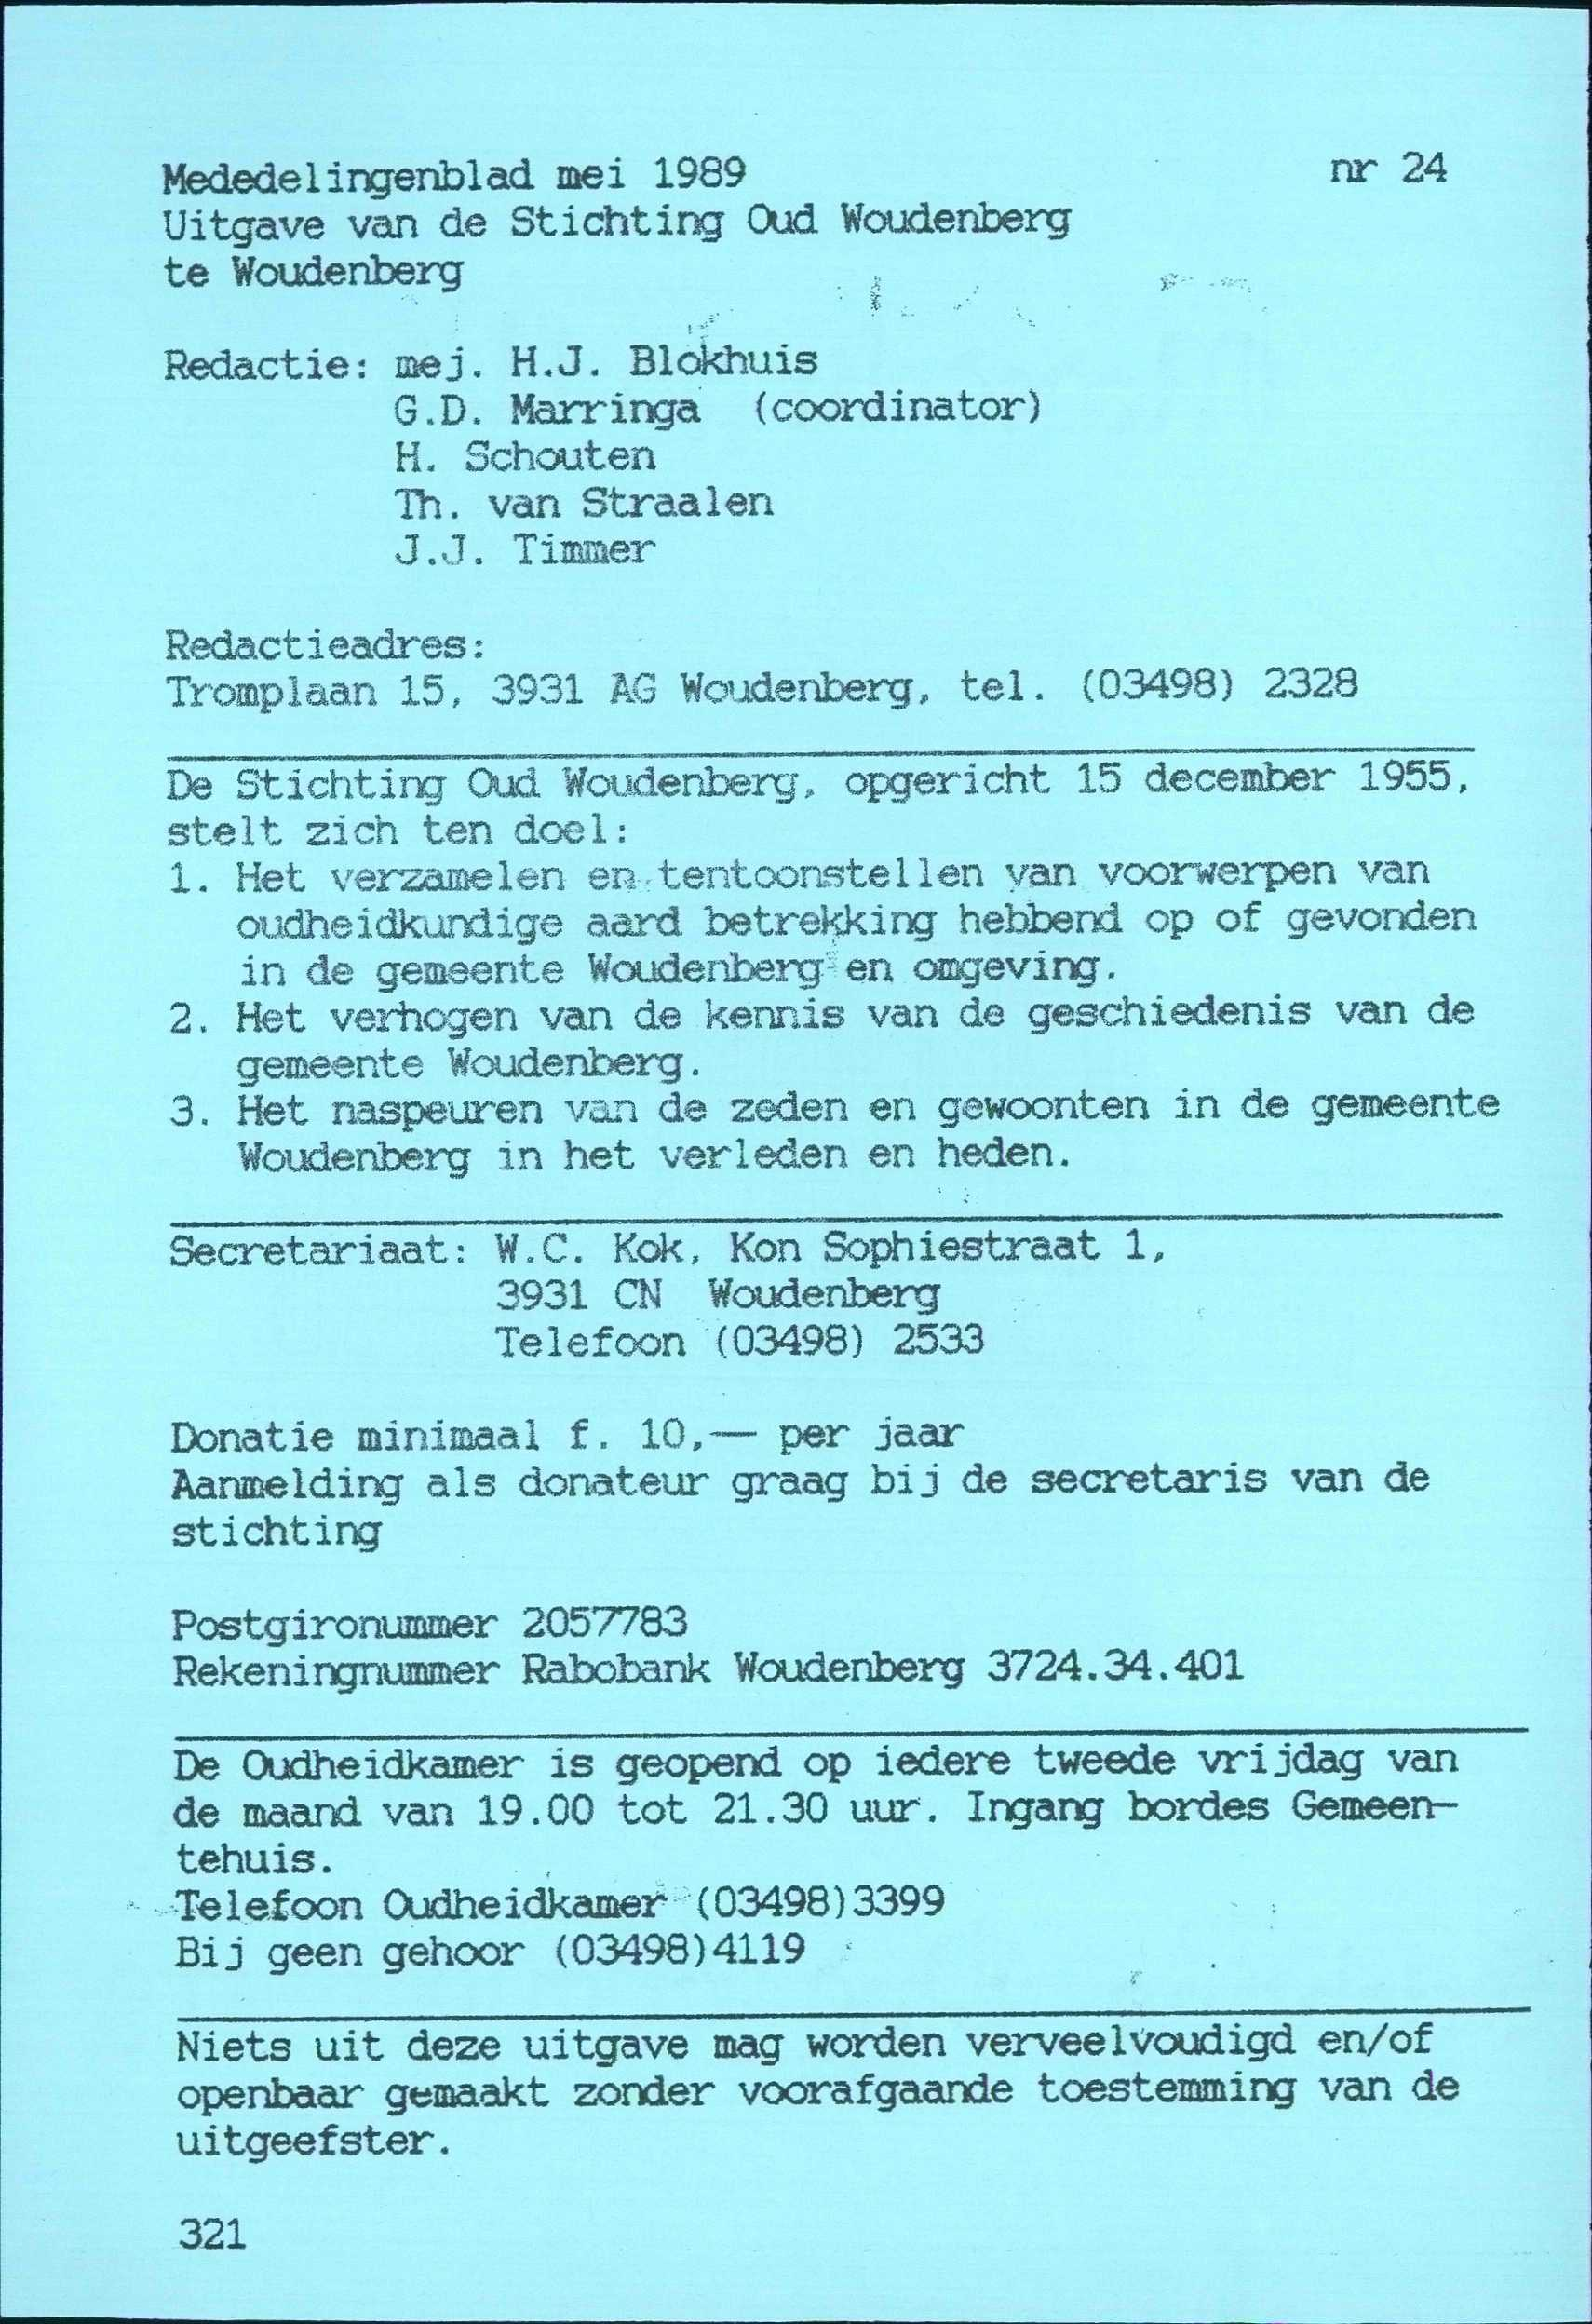 Mededelingenblad mei 1989 nr 24 Uitgave van de Stichting Oud Woudenberg te Woudenberg,. Redactie: mej. H.J. Blokhuis G.D. Marringa (coordinator) H. Schouten Th. van Straalen J..J. Timmer Redactieadres : Tromplaan 15, 3931 AG Woudenberg, tel.